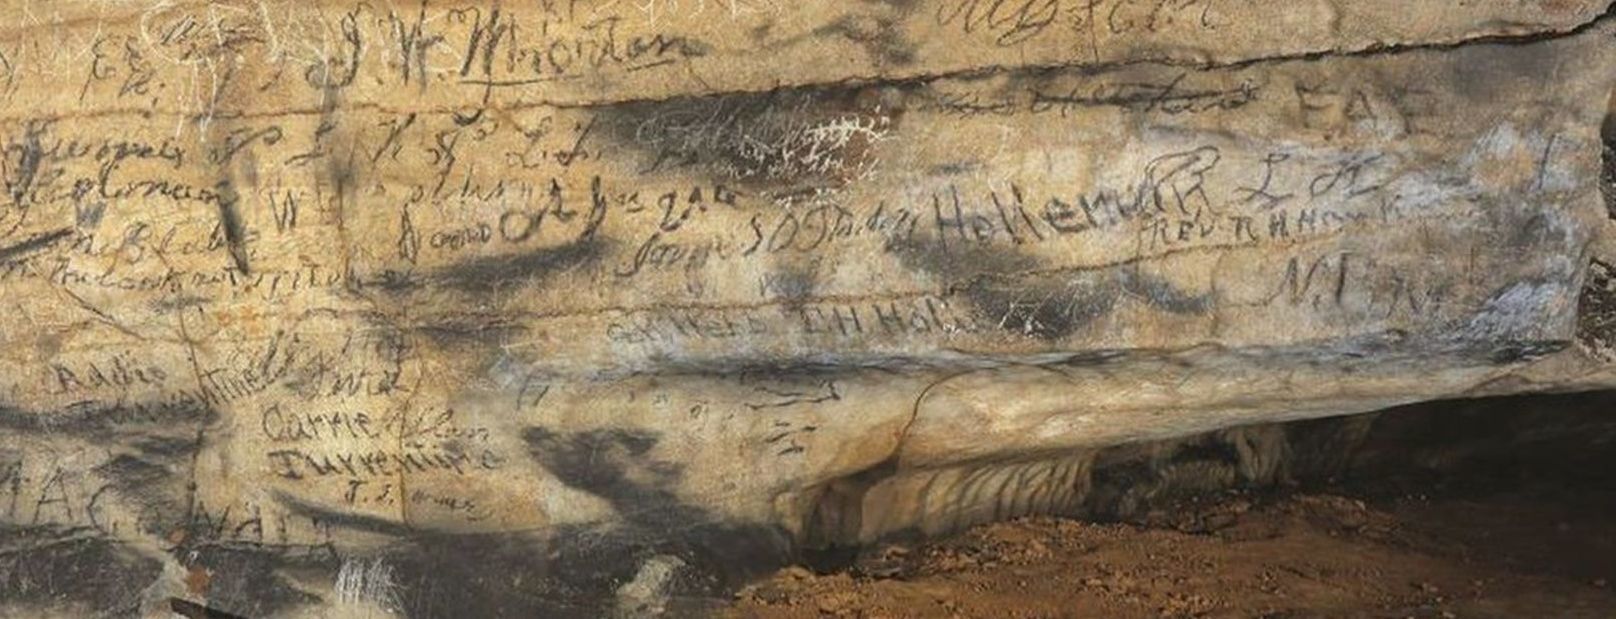 Про спортивную игру и общение с духами. Впервые ученые перевели надписи народа чероки в пещере в Алабаме